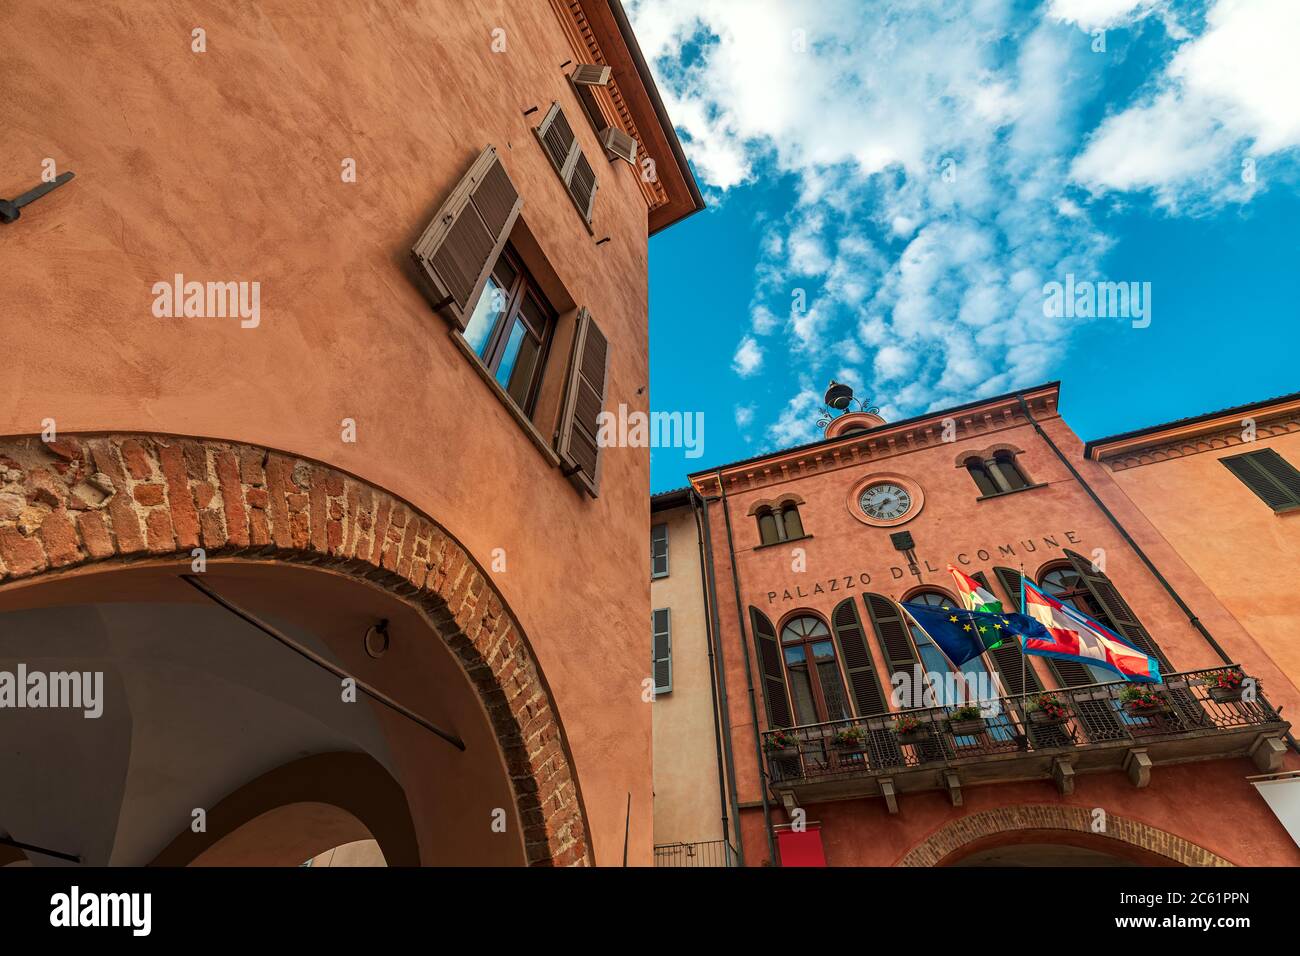 Antica casa storica e municipio con balcone, bandiere e orologio sotto il bel cielo di Alba, Piemonte, Italia settentrionale (vista ad angolo basso). Foto Stock